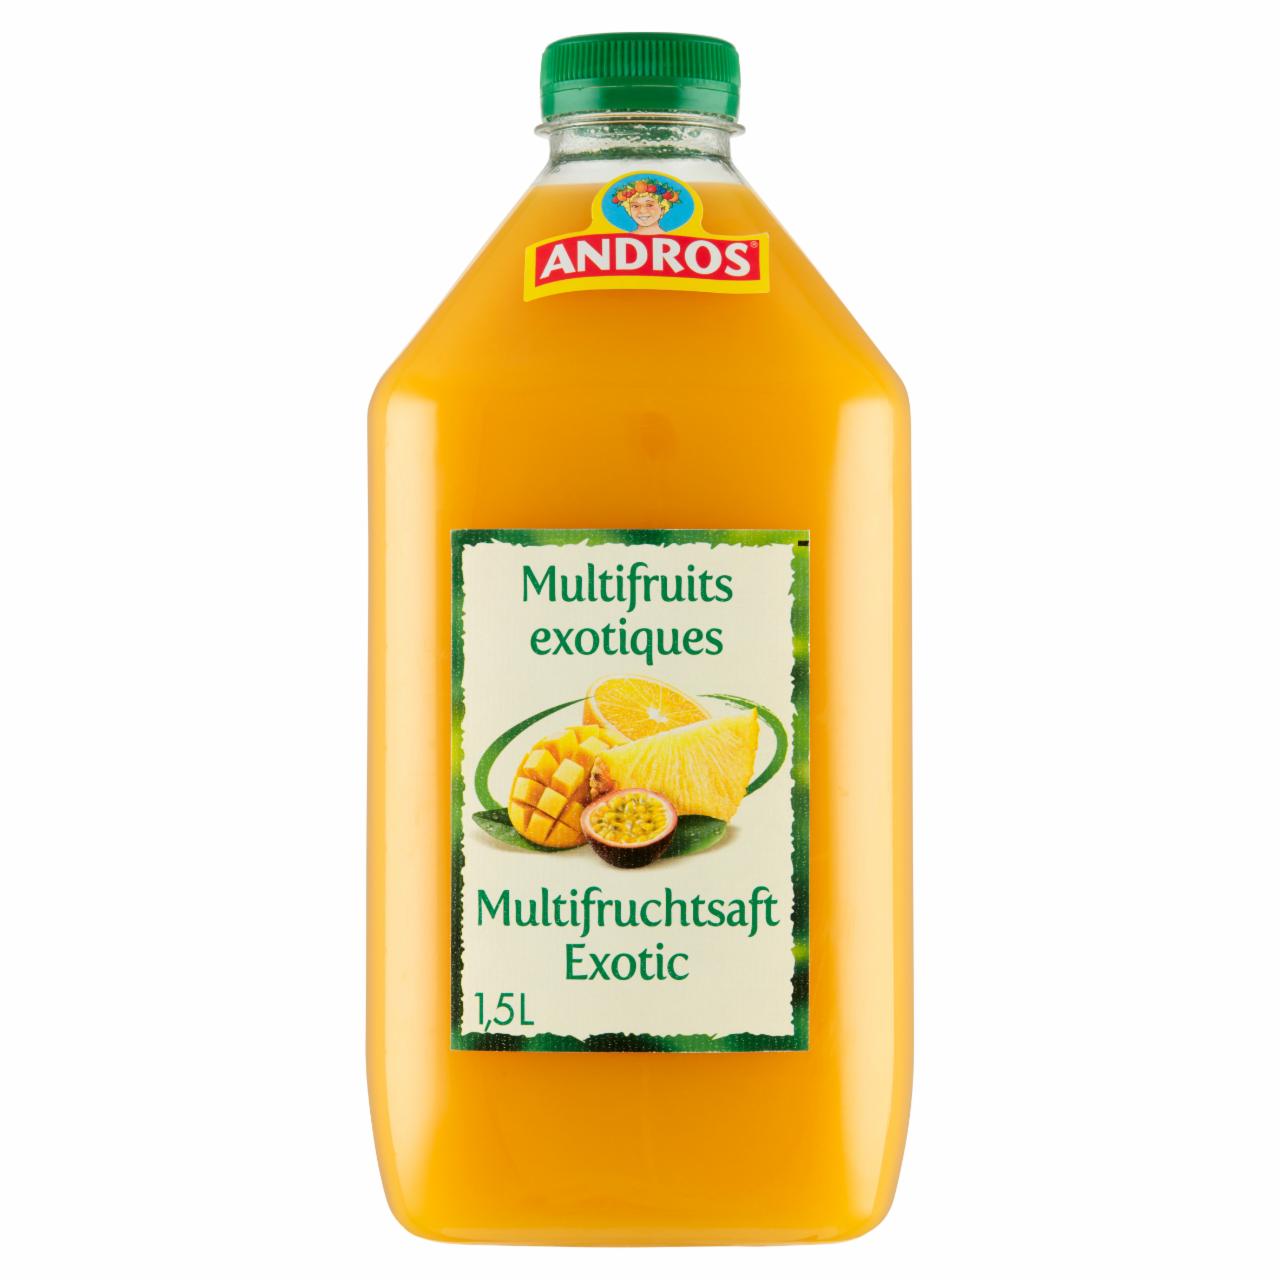 Zdjęcia - Andros Produkt do picia z owoców egzotycznych 1,5 l